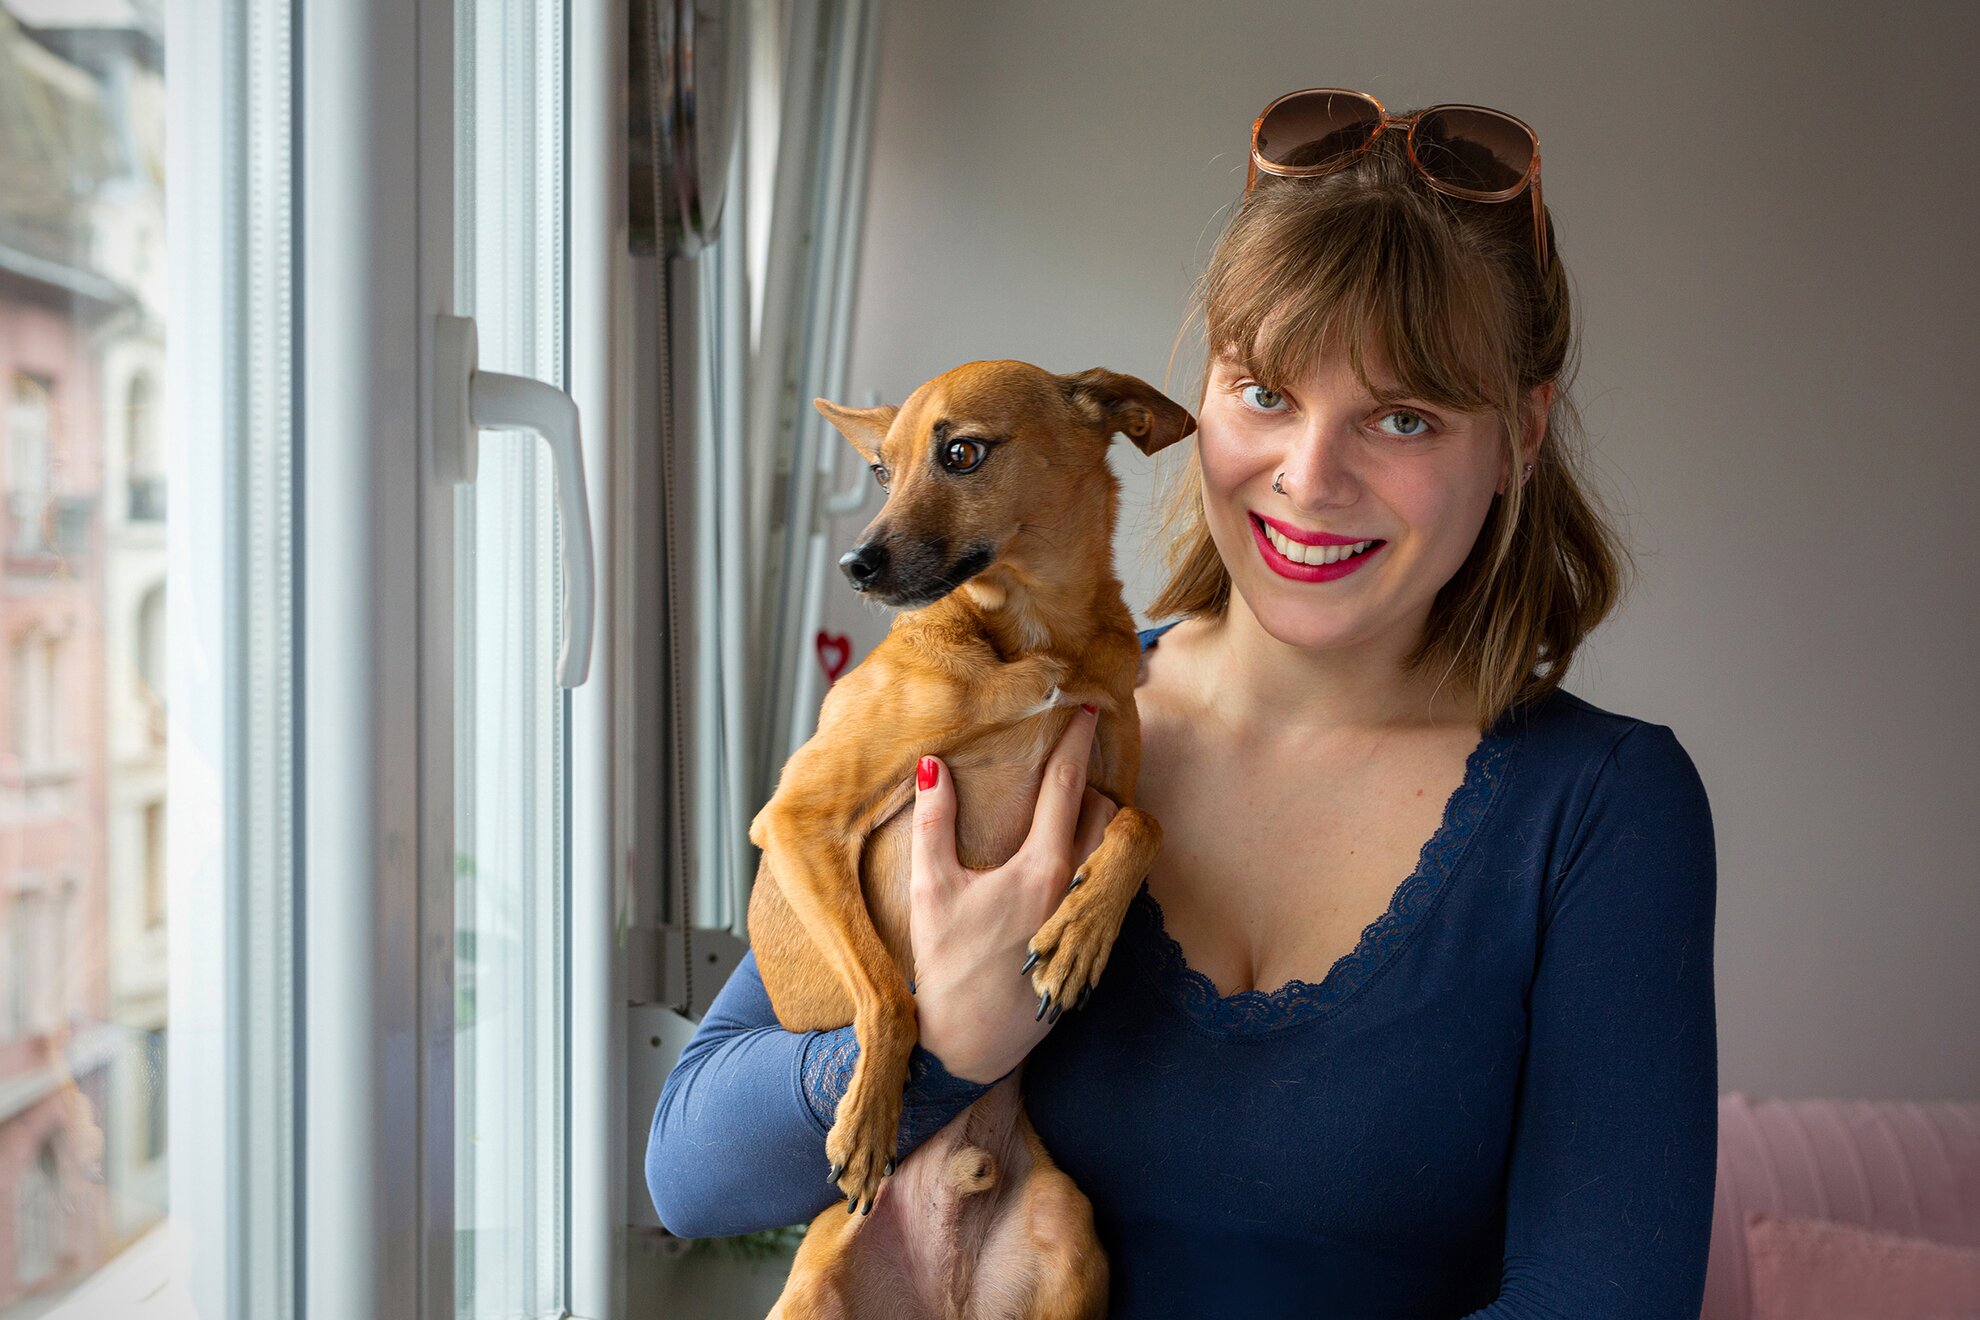 „Nagy tévhit, hogy akkor legyen kutyád, ha kertes házban laksz” – Interjú Ocztos Panka kutyakiképzővel